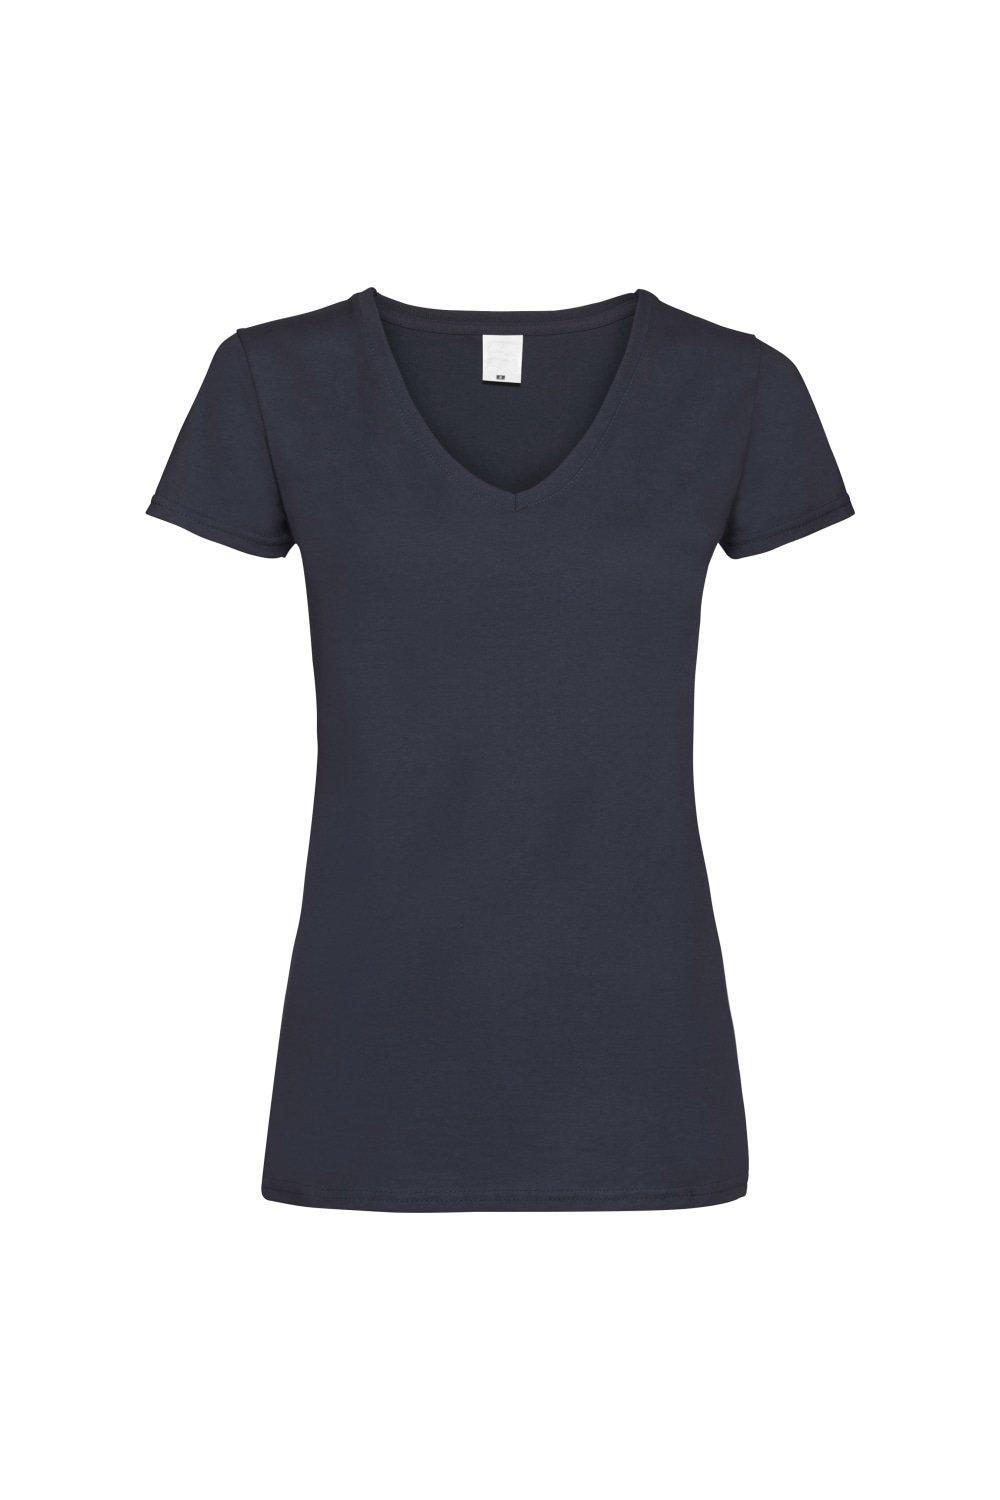 Повседневная футболка Value с V-образным вырезом и короткими рукавами Universal Textiles, синий футболка женская mia серый меланж размер xl